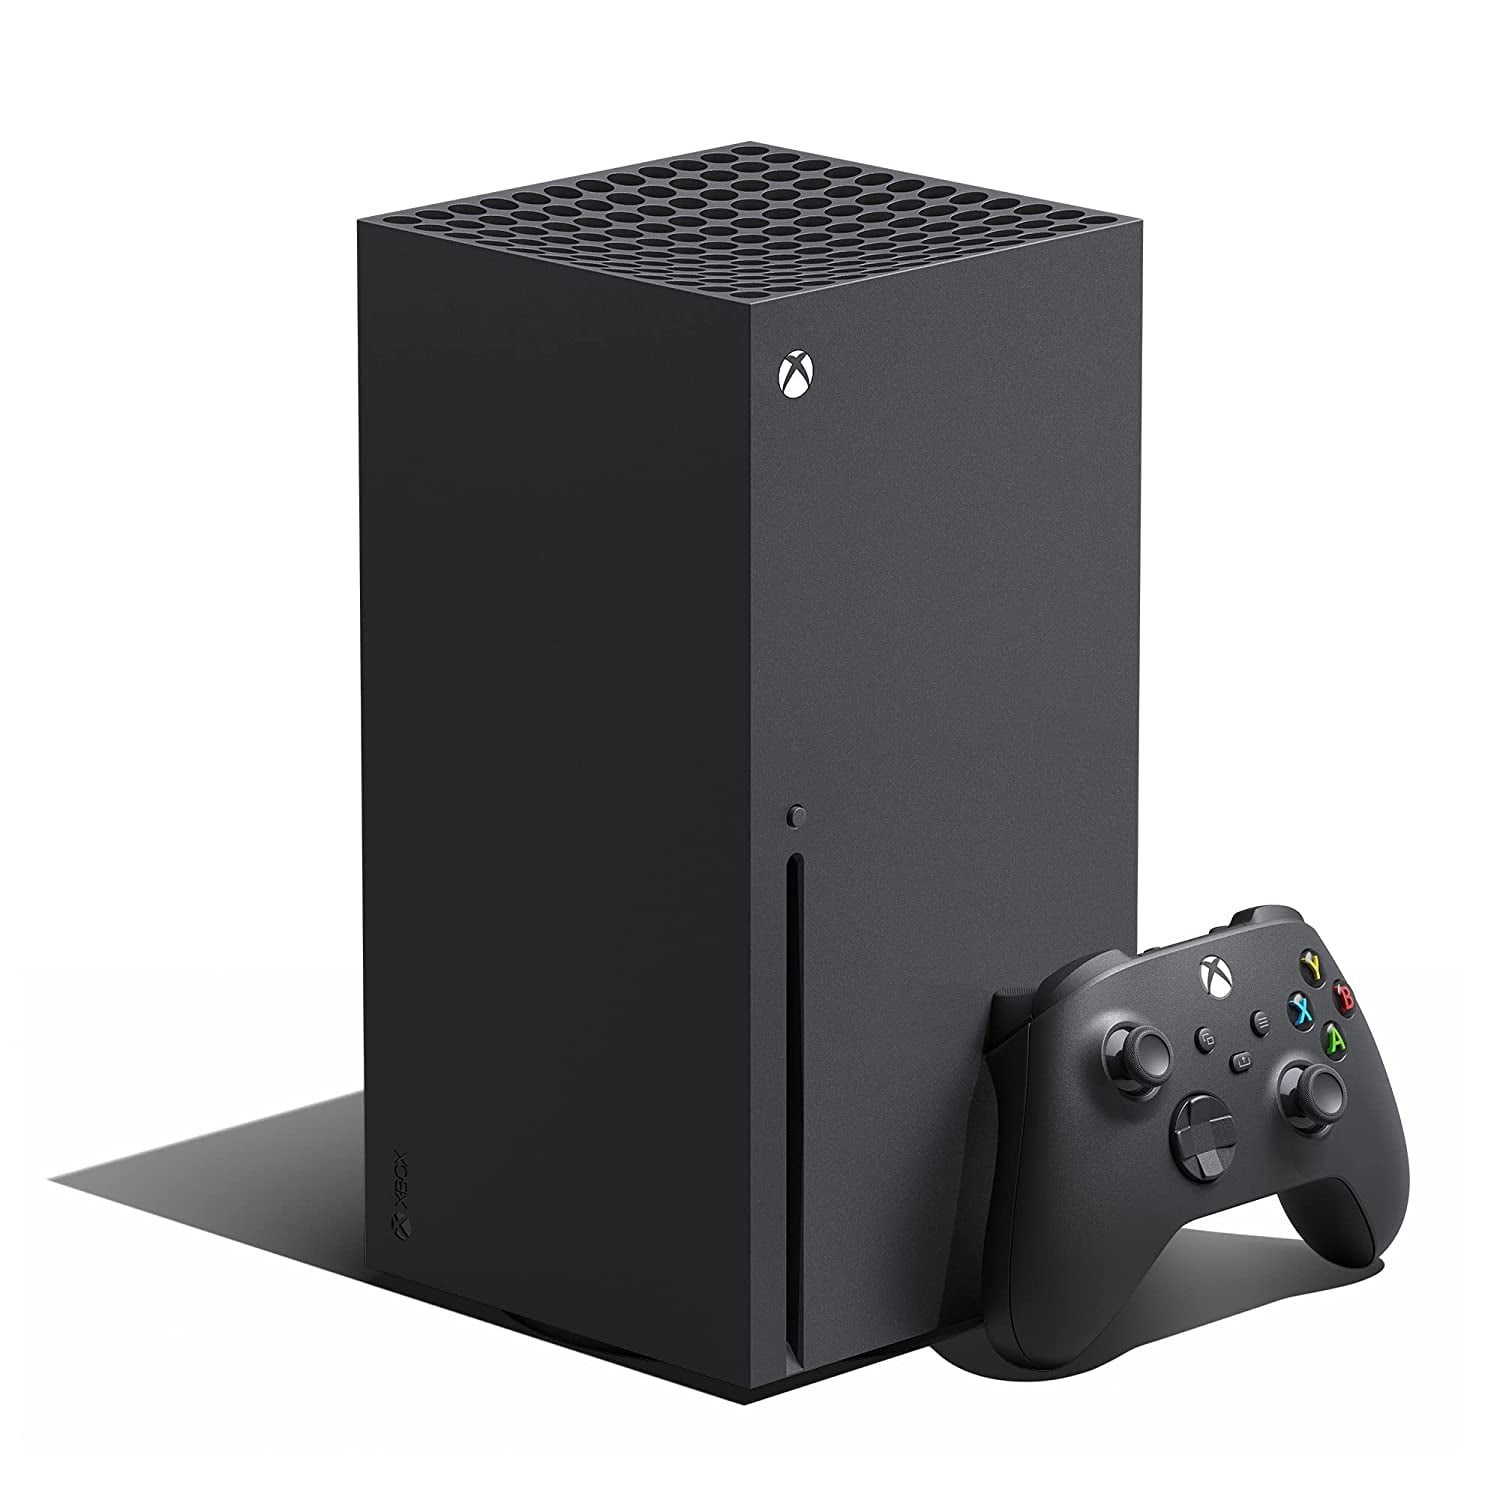 【即日発送】新品未開封Microsoft Xbox Series X